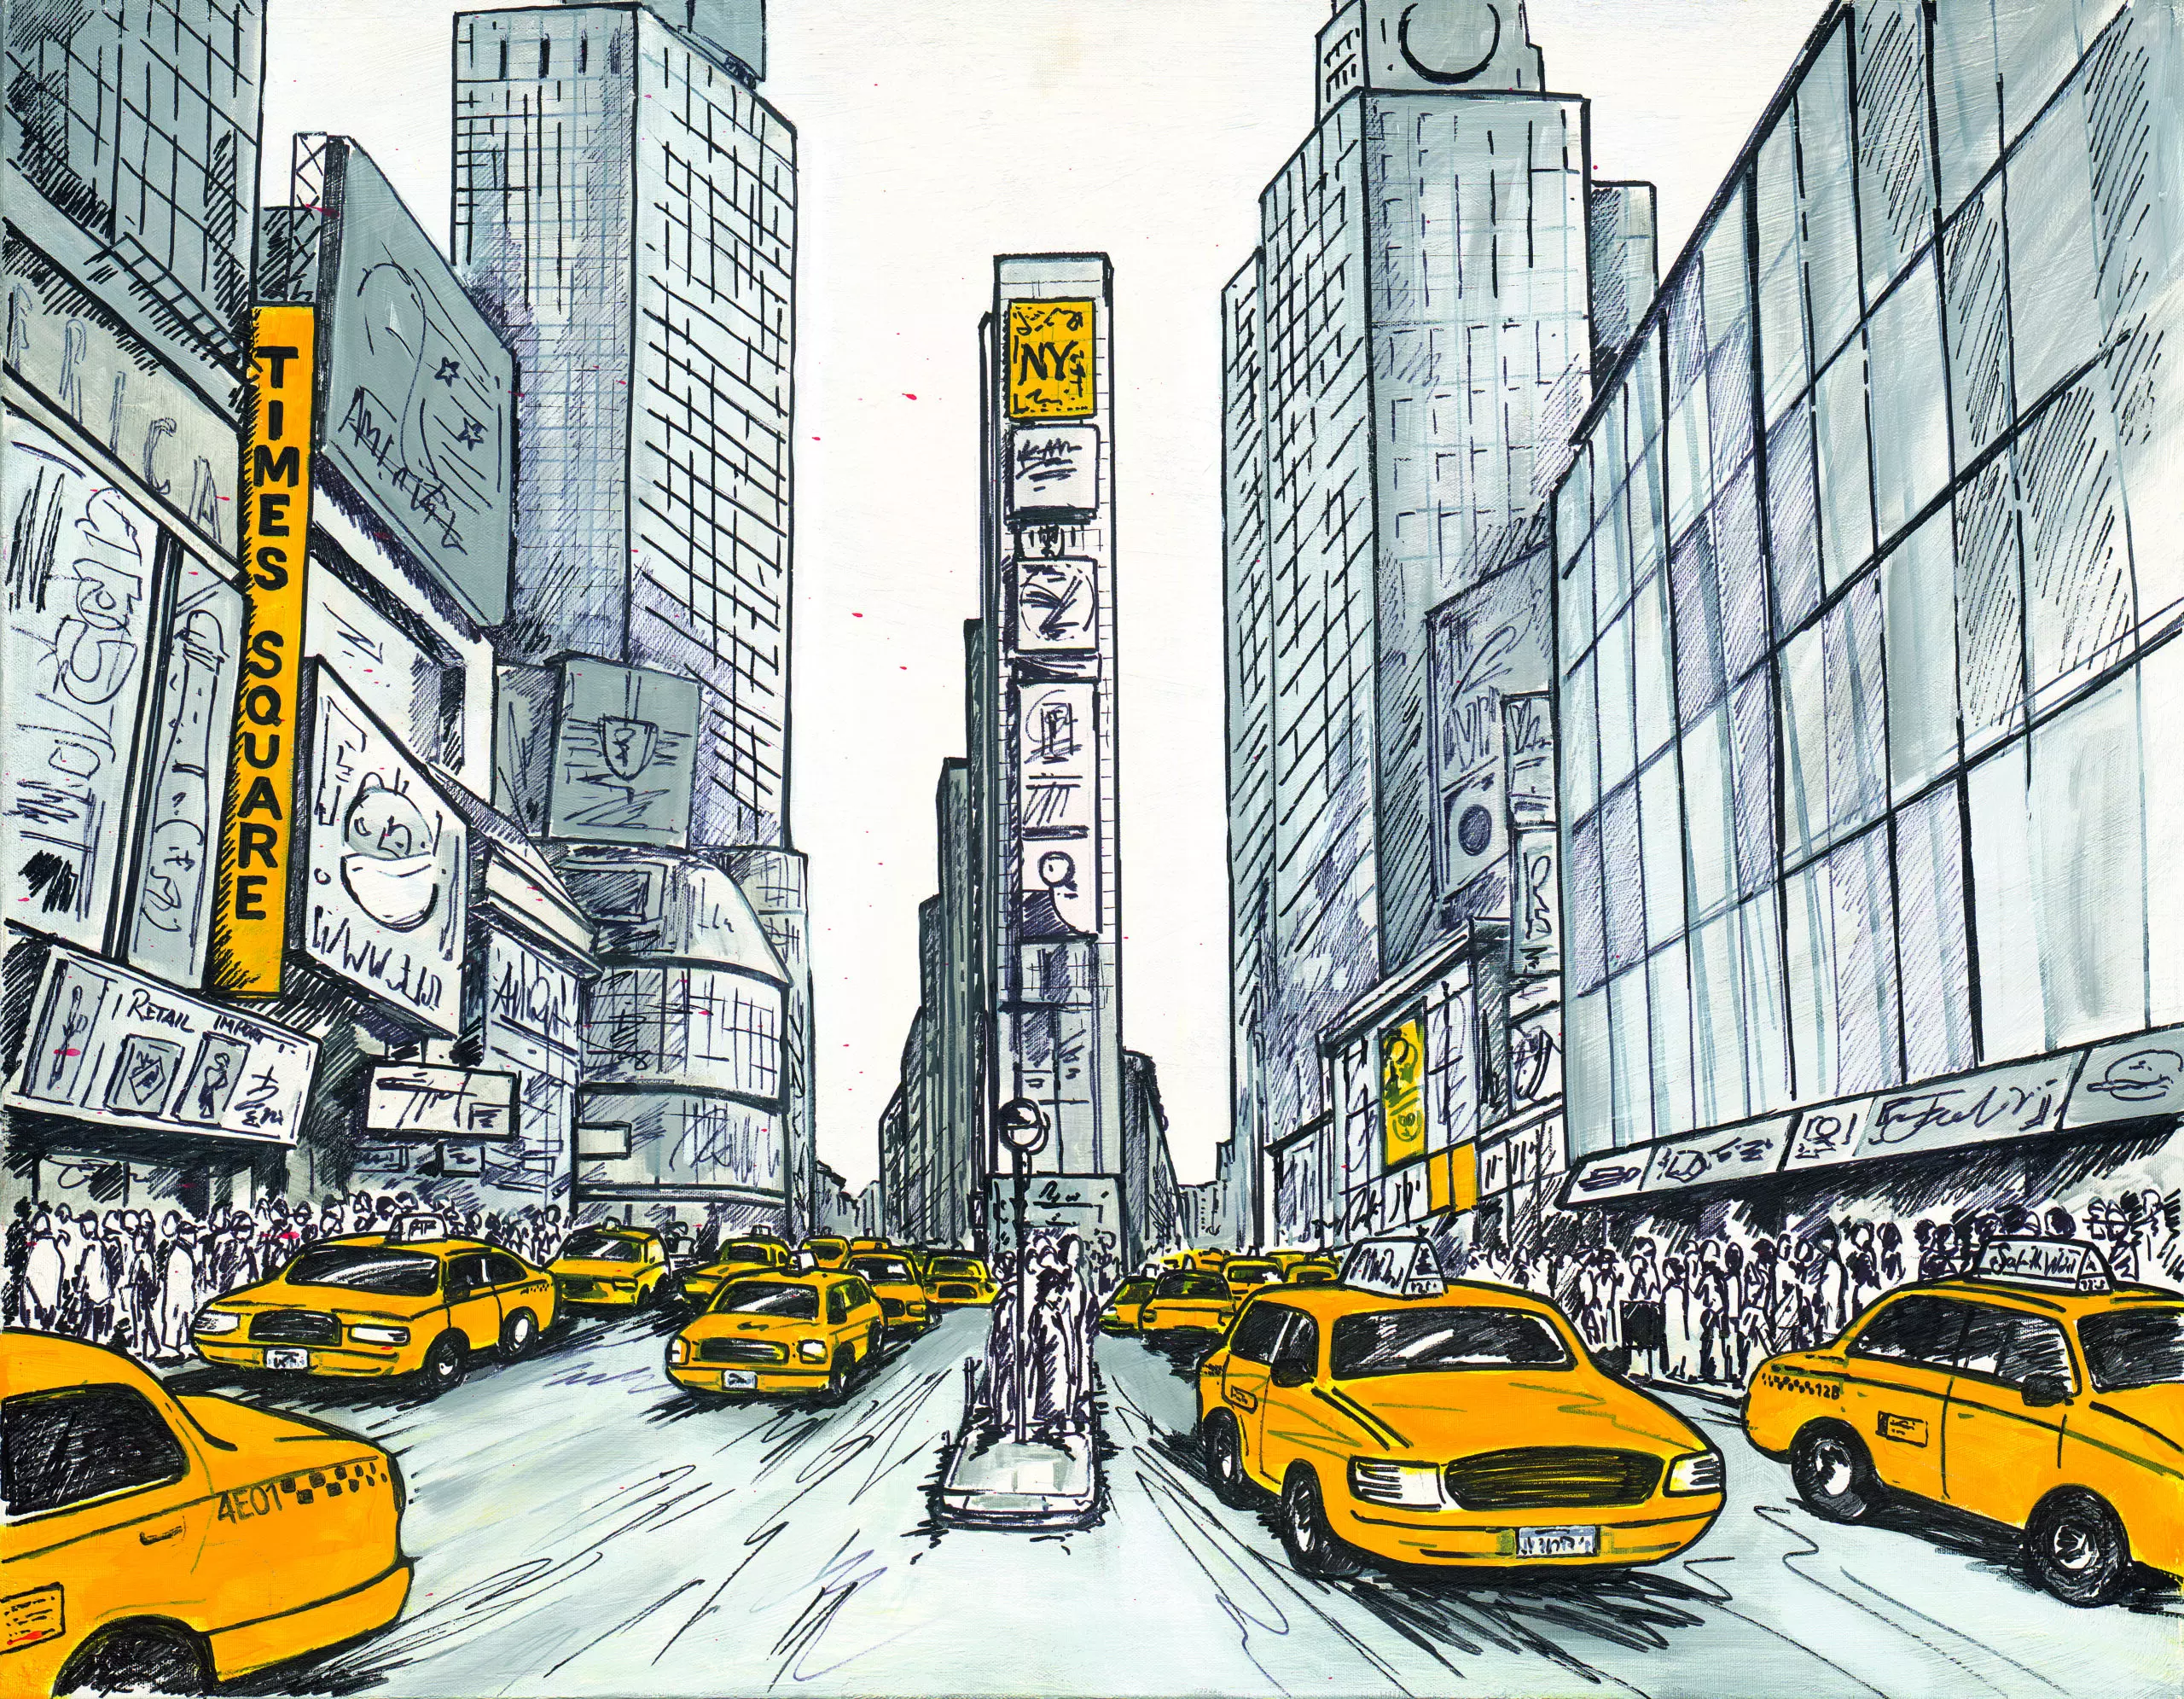 Wandbild (4993) New York, Times Square präsentiert: Menschen,Technik,Kreatives,Architektur,Häuser,Skylines,Sonstige Architektur,Sehenswürdigkeiten,Menschengruppen,Auto